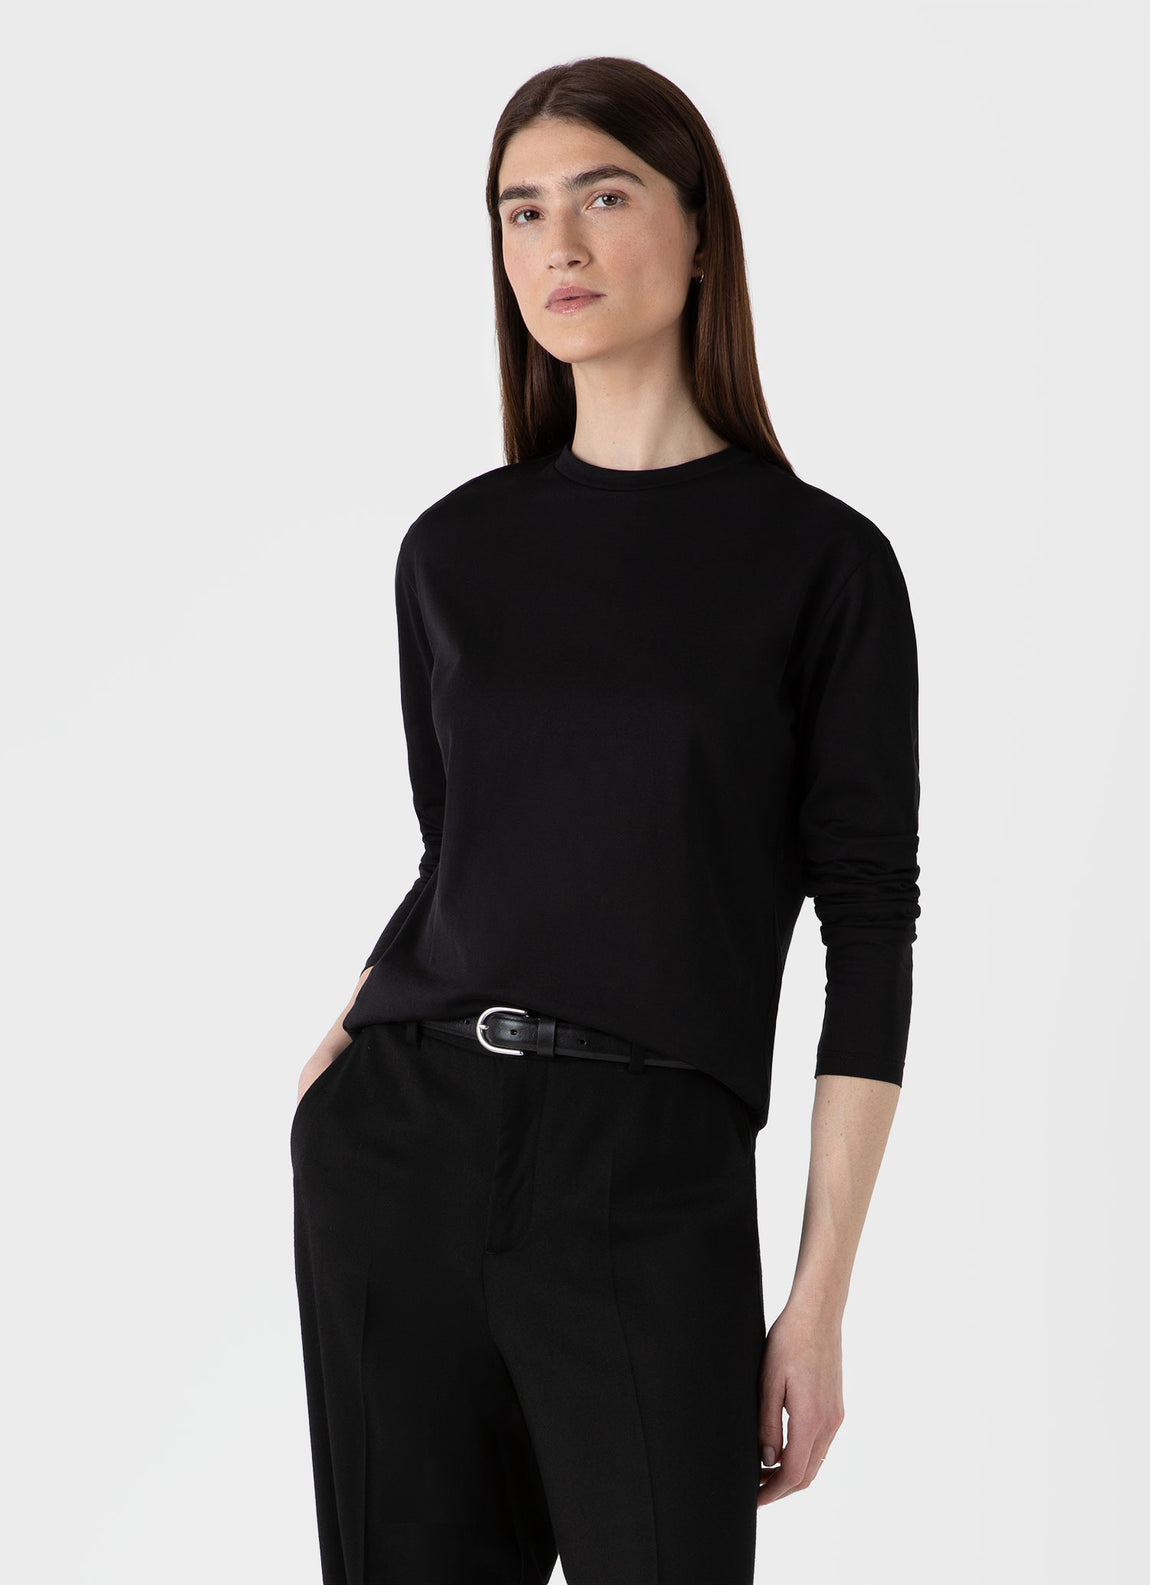 Women's Long Sleeve Boy Fit T-shirt in Black